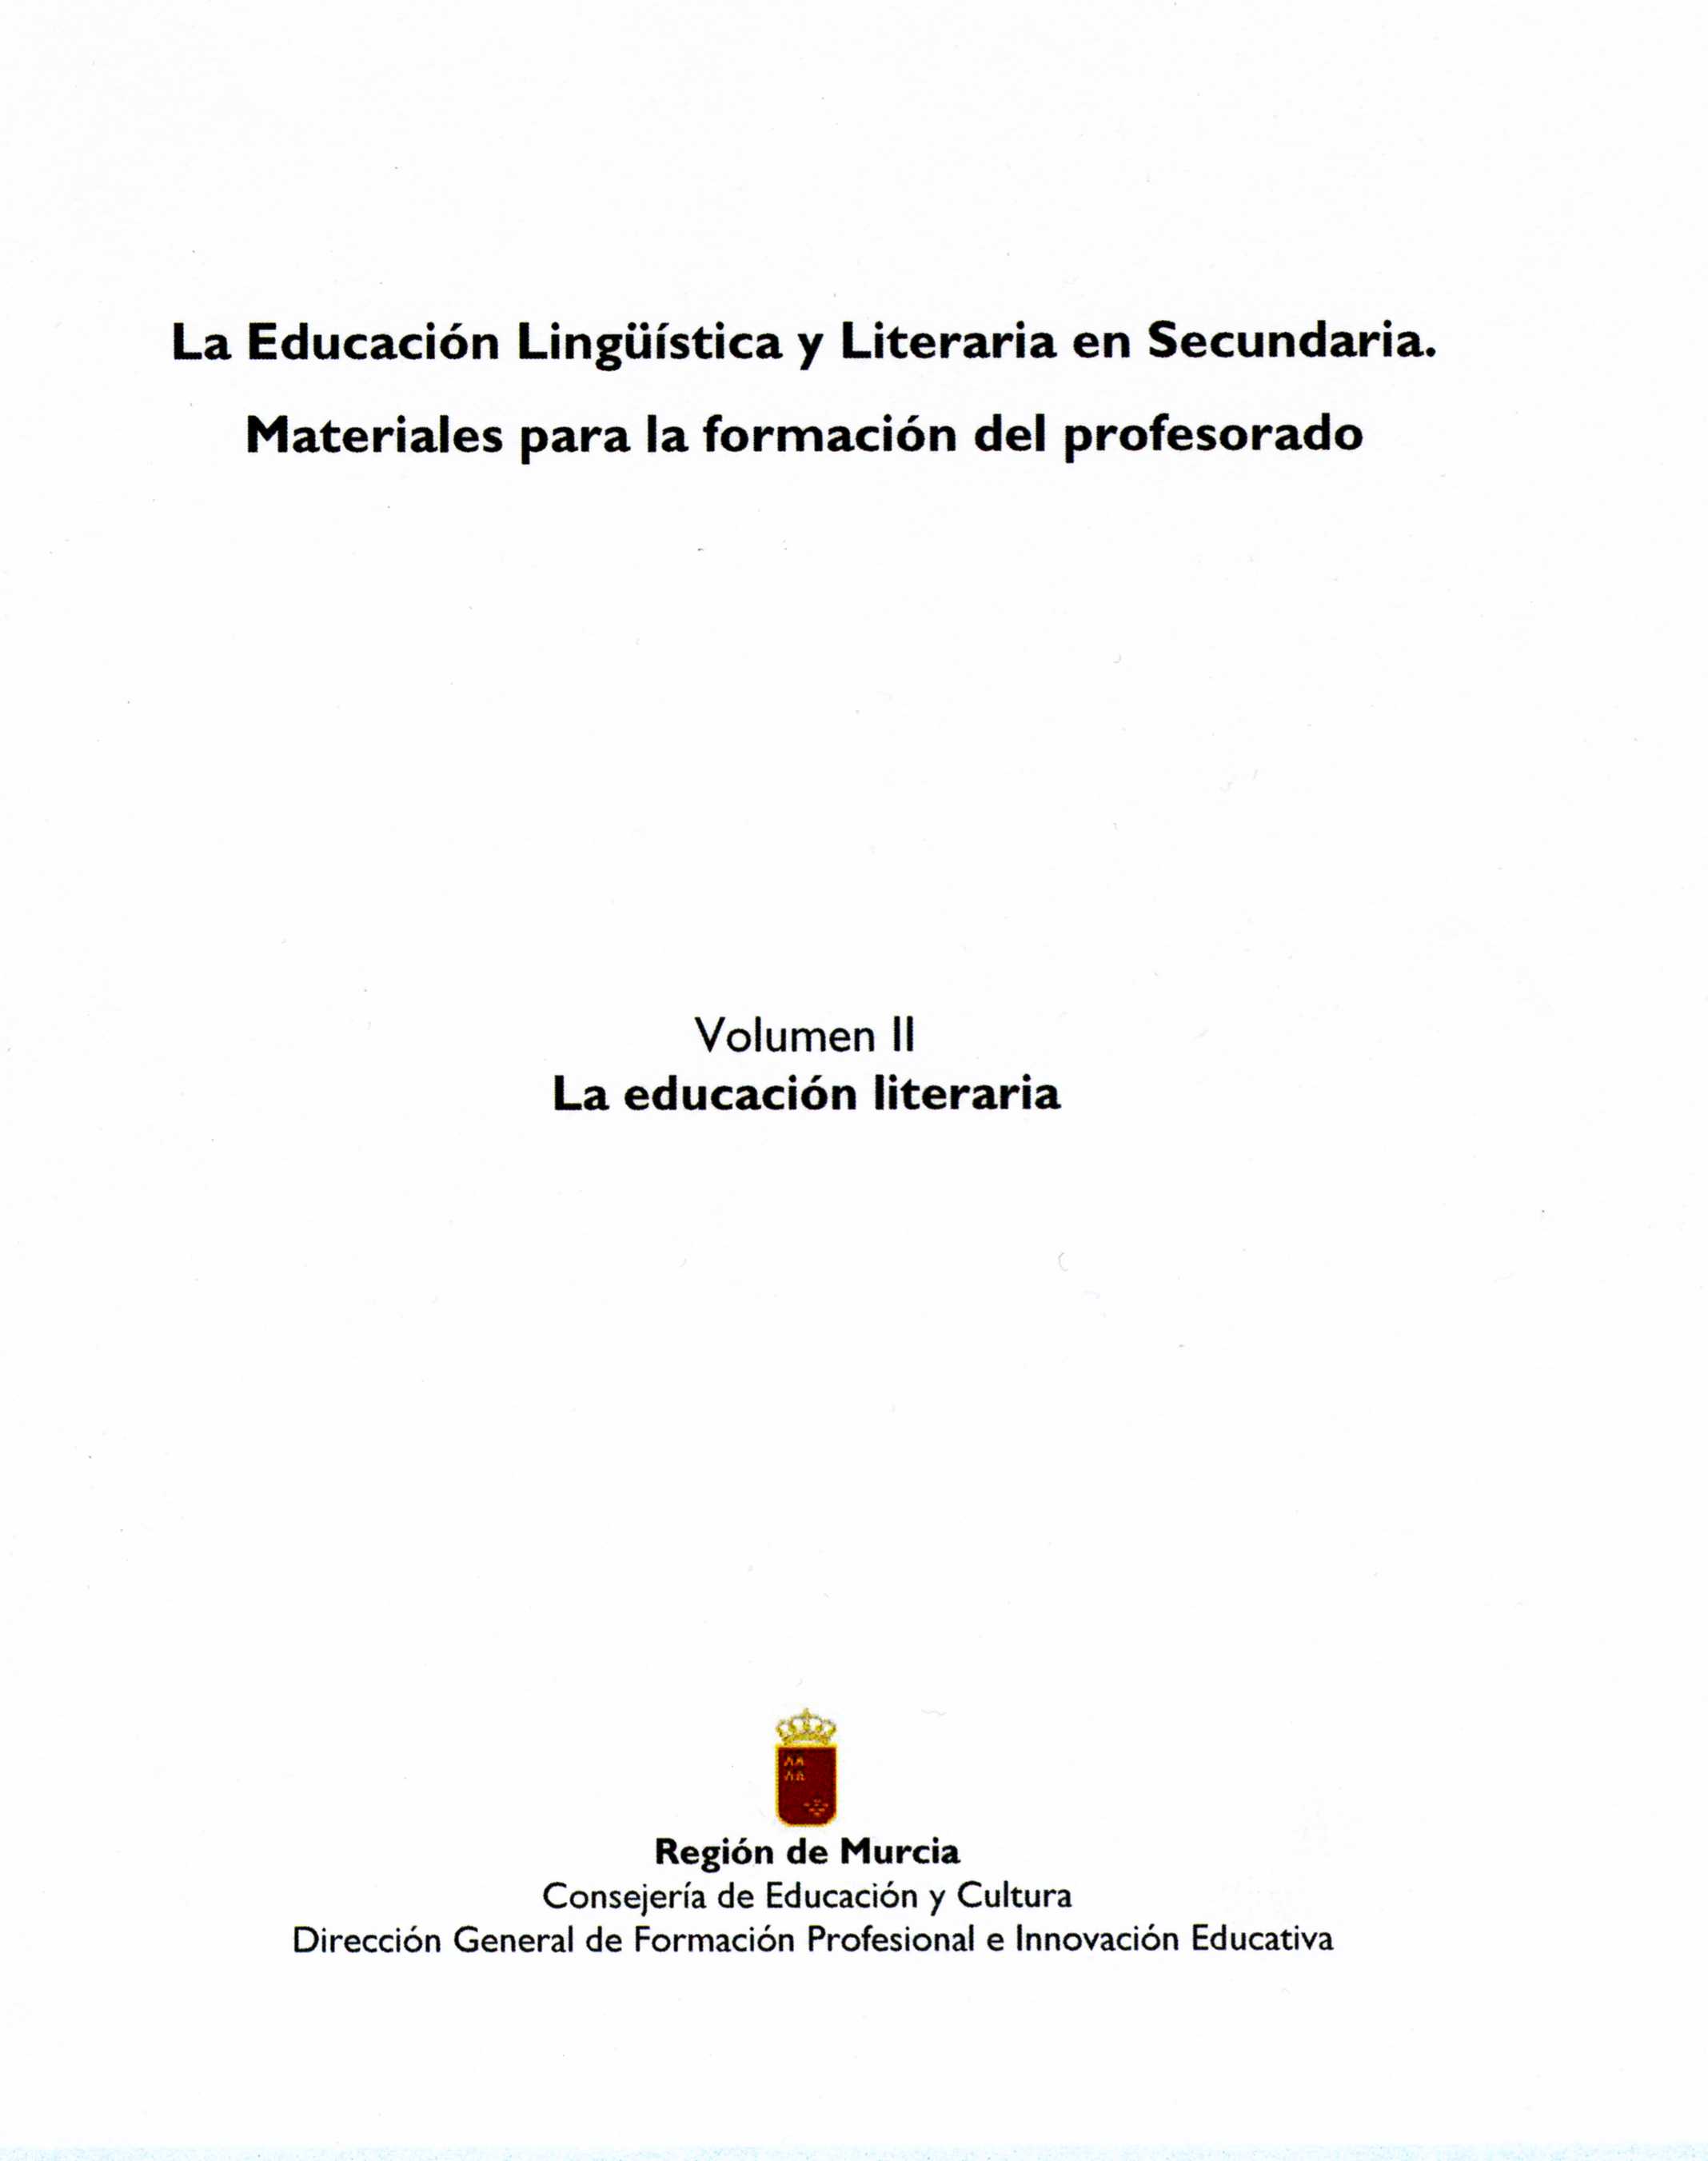 Portada de "La educación lingüística y literaria en secundaria : materiales para la formación del profesorado. Vol. II. La educación literaria"